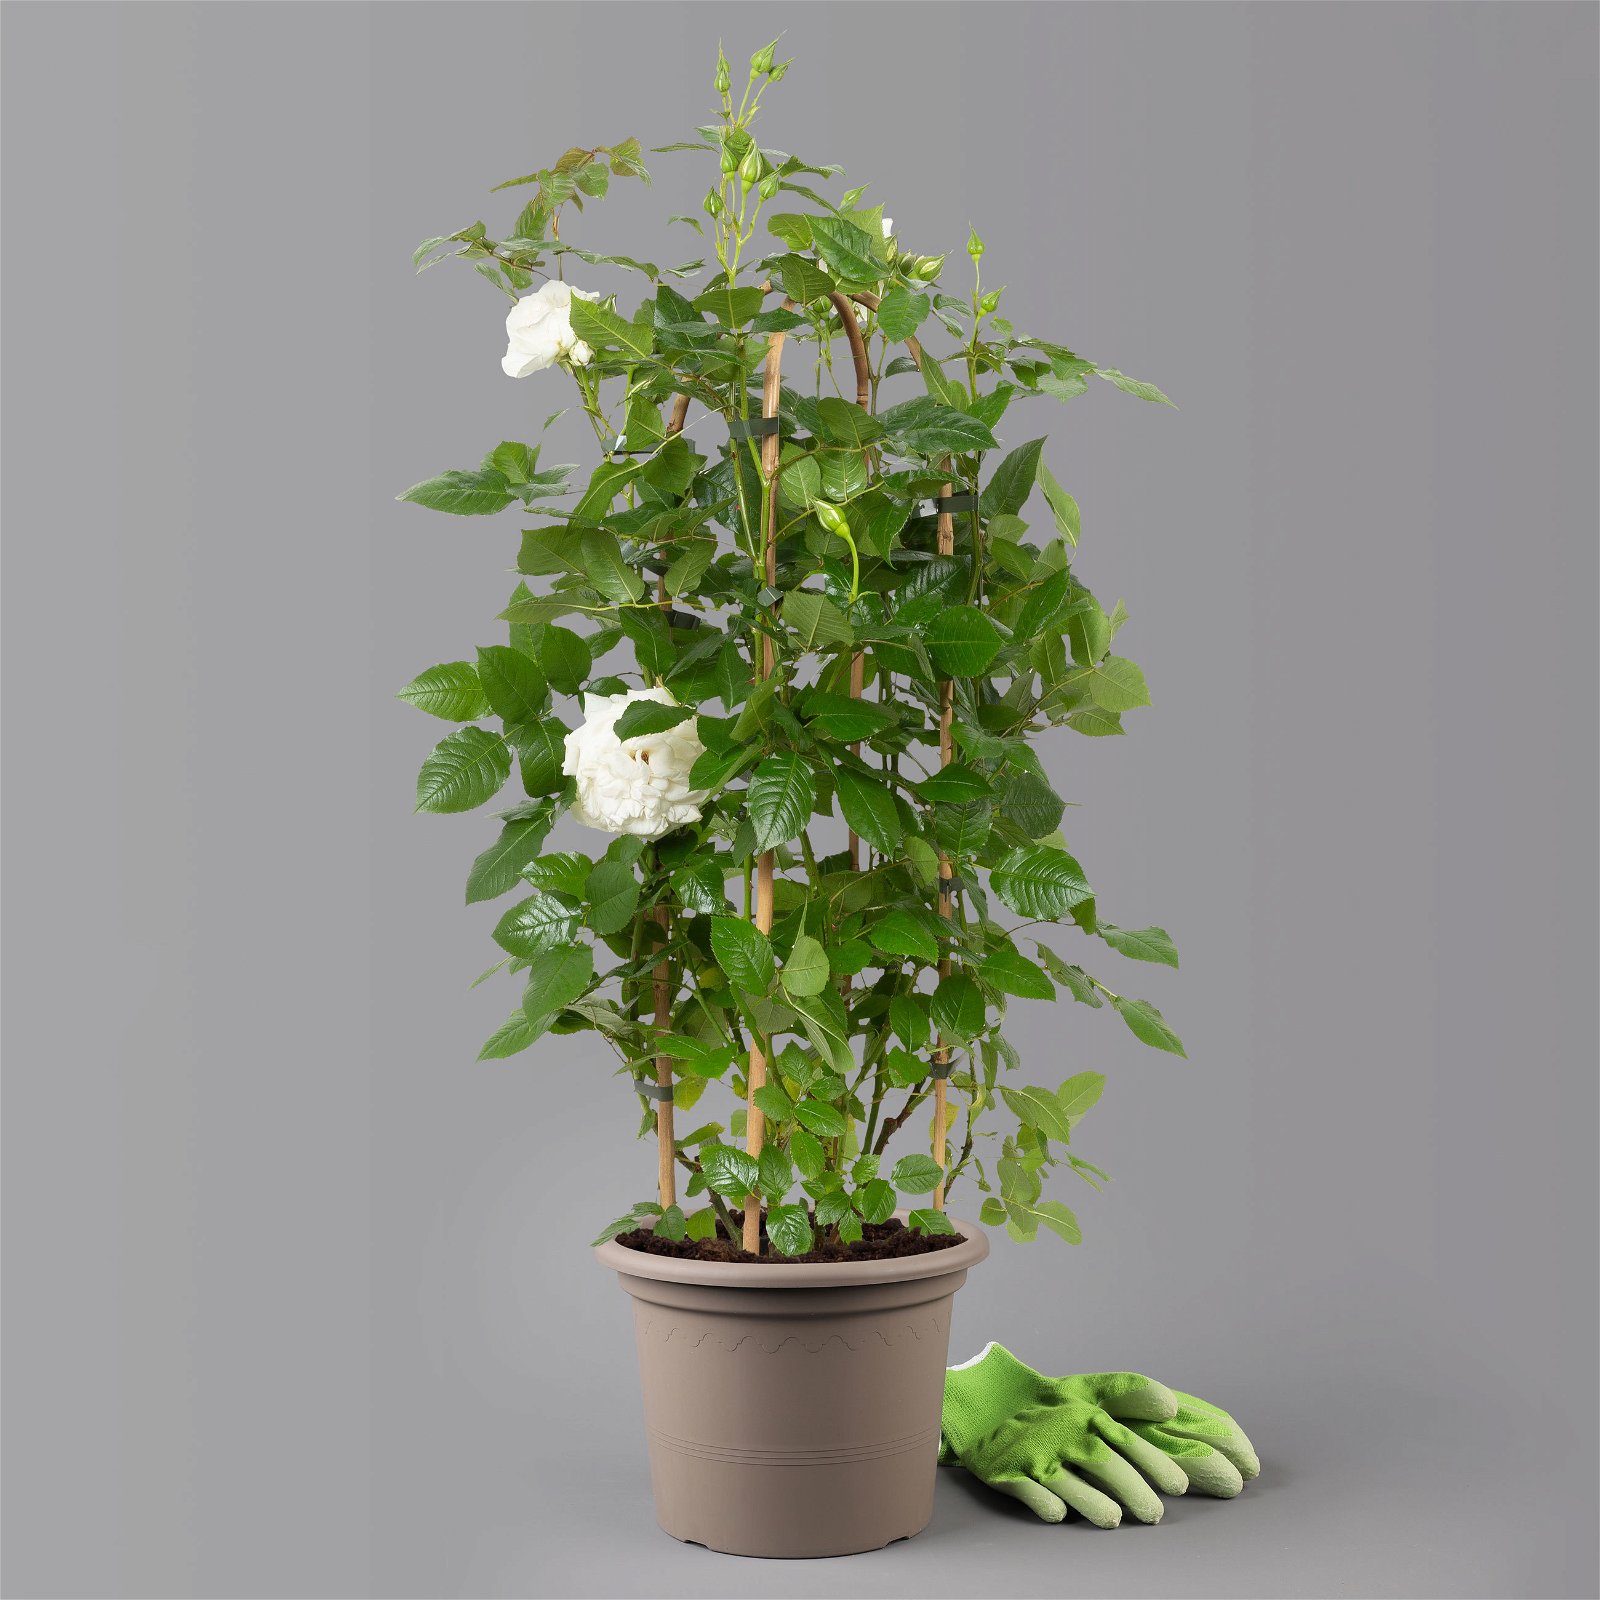 Duftende Beetrose 'Die Rose Ihrer Majestät'® (Beainesza), weiss, Topf 7,5 Liter